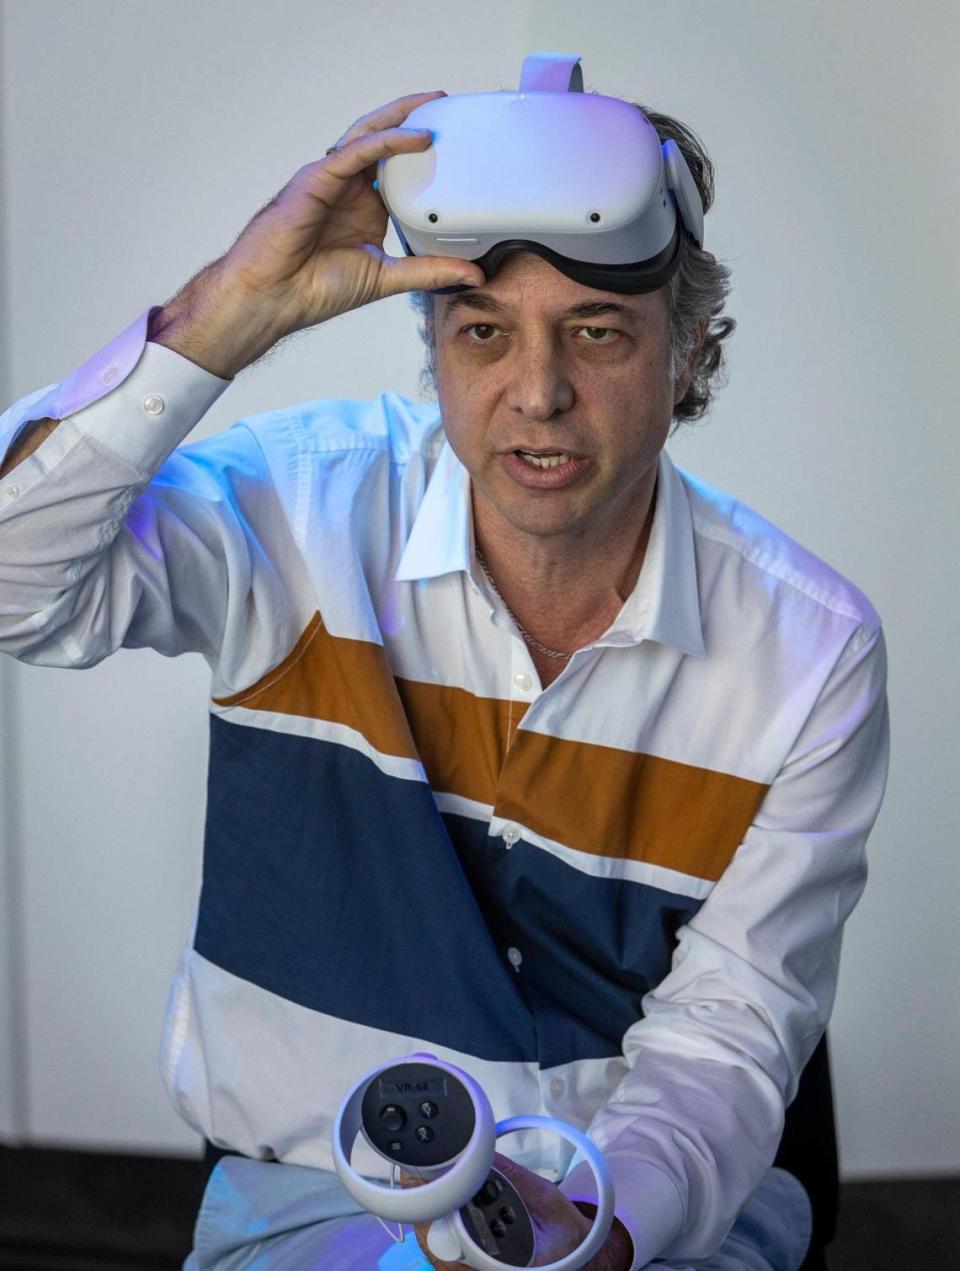 Jeffrey Buchman, profesor asociado y director de escena de ópera de la Escuela de Música Frost con el equipo de realidad virtual que usa en una clase que imparte dentro de una plataforma de realidad virtual que permite a los alumnos trabajar en espacios tridimensionales.